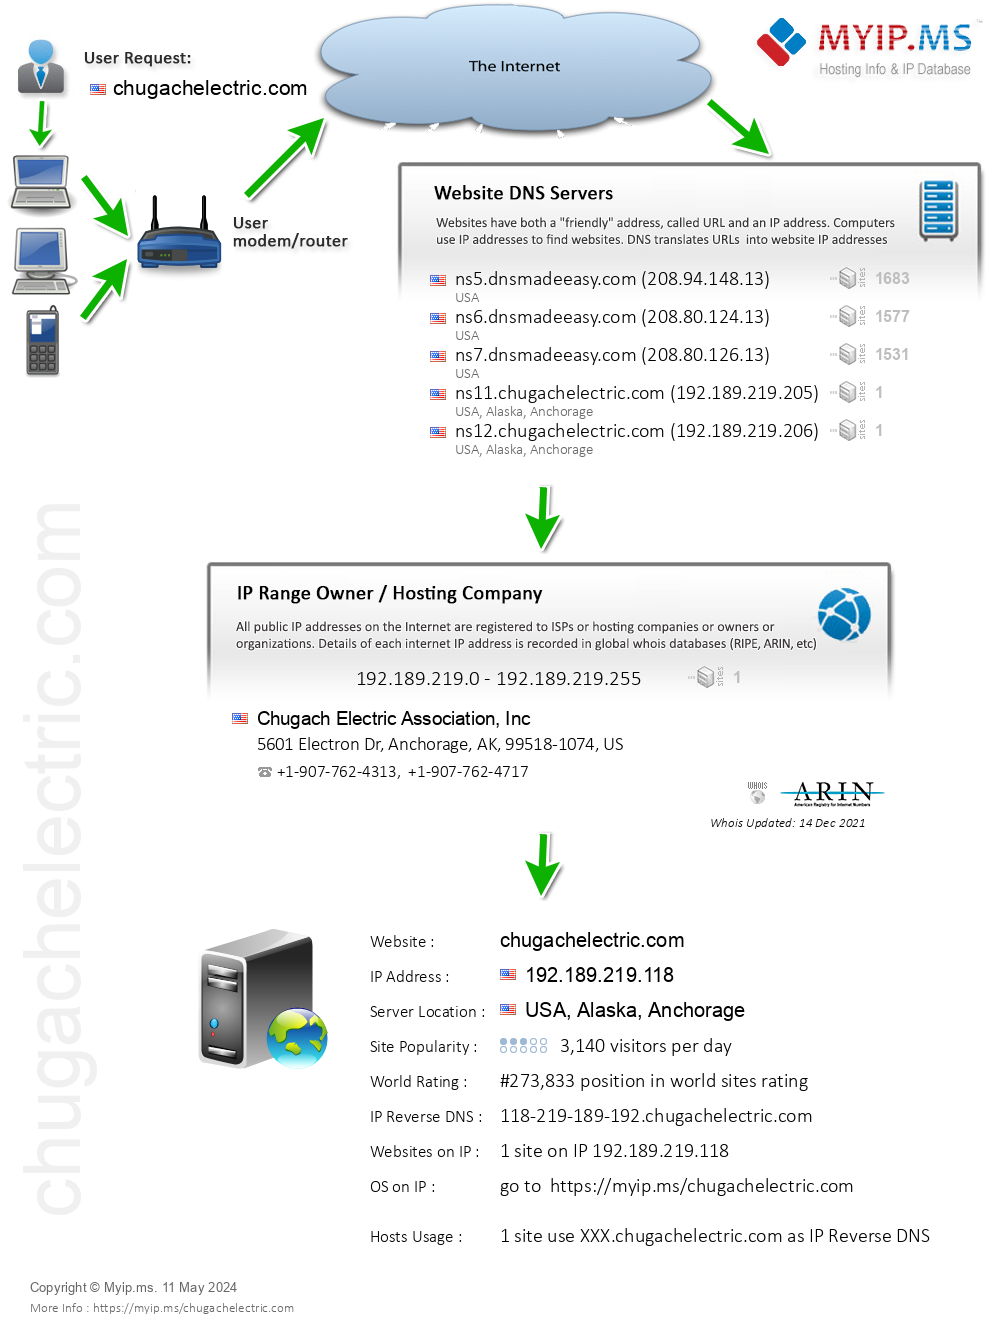 Chugachelectric.com - Website Hosting Visual IP Diagram